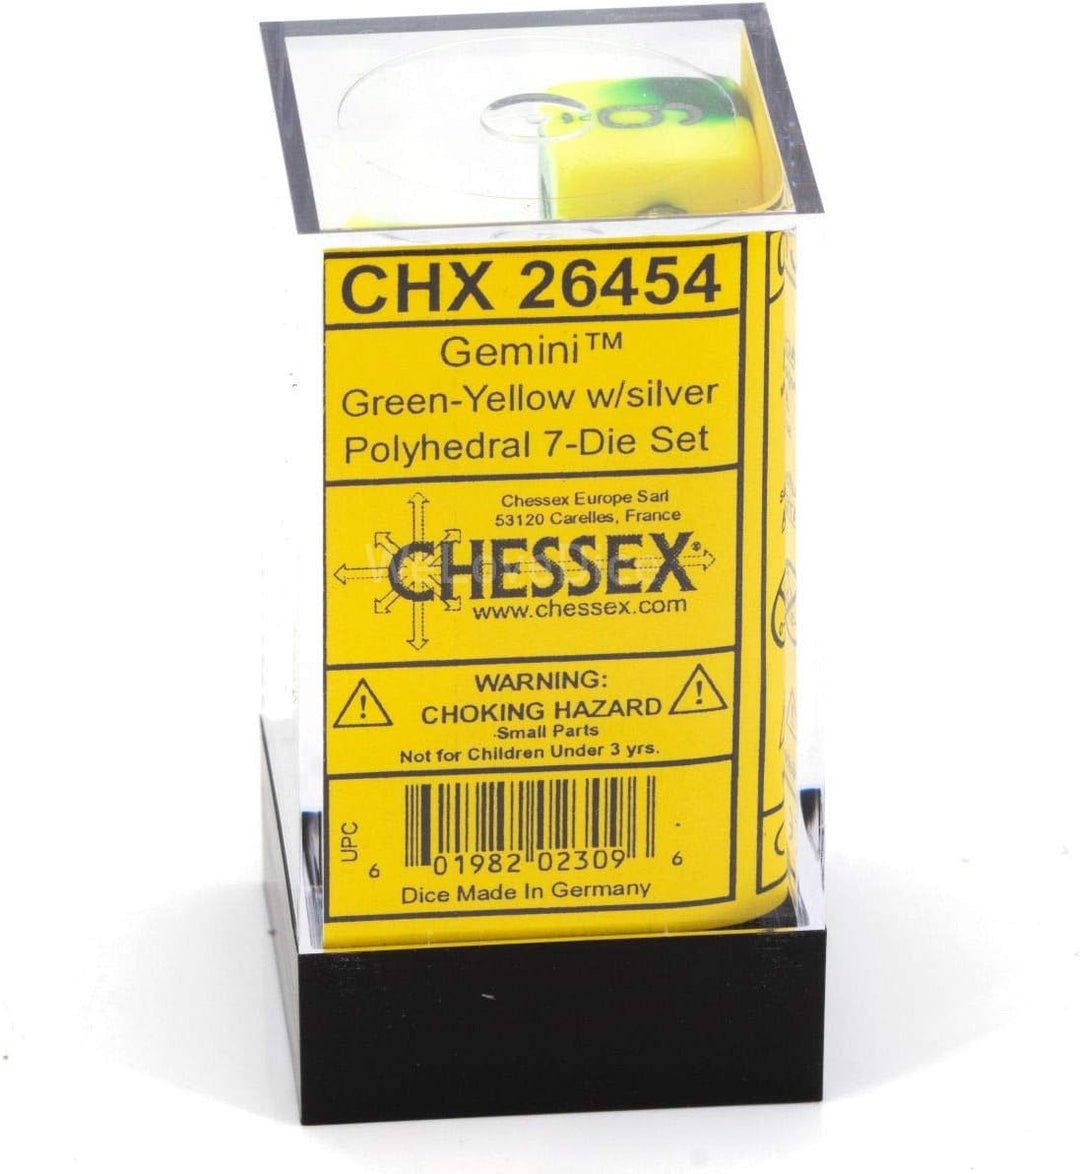 Chessex 26454 accessories.